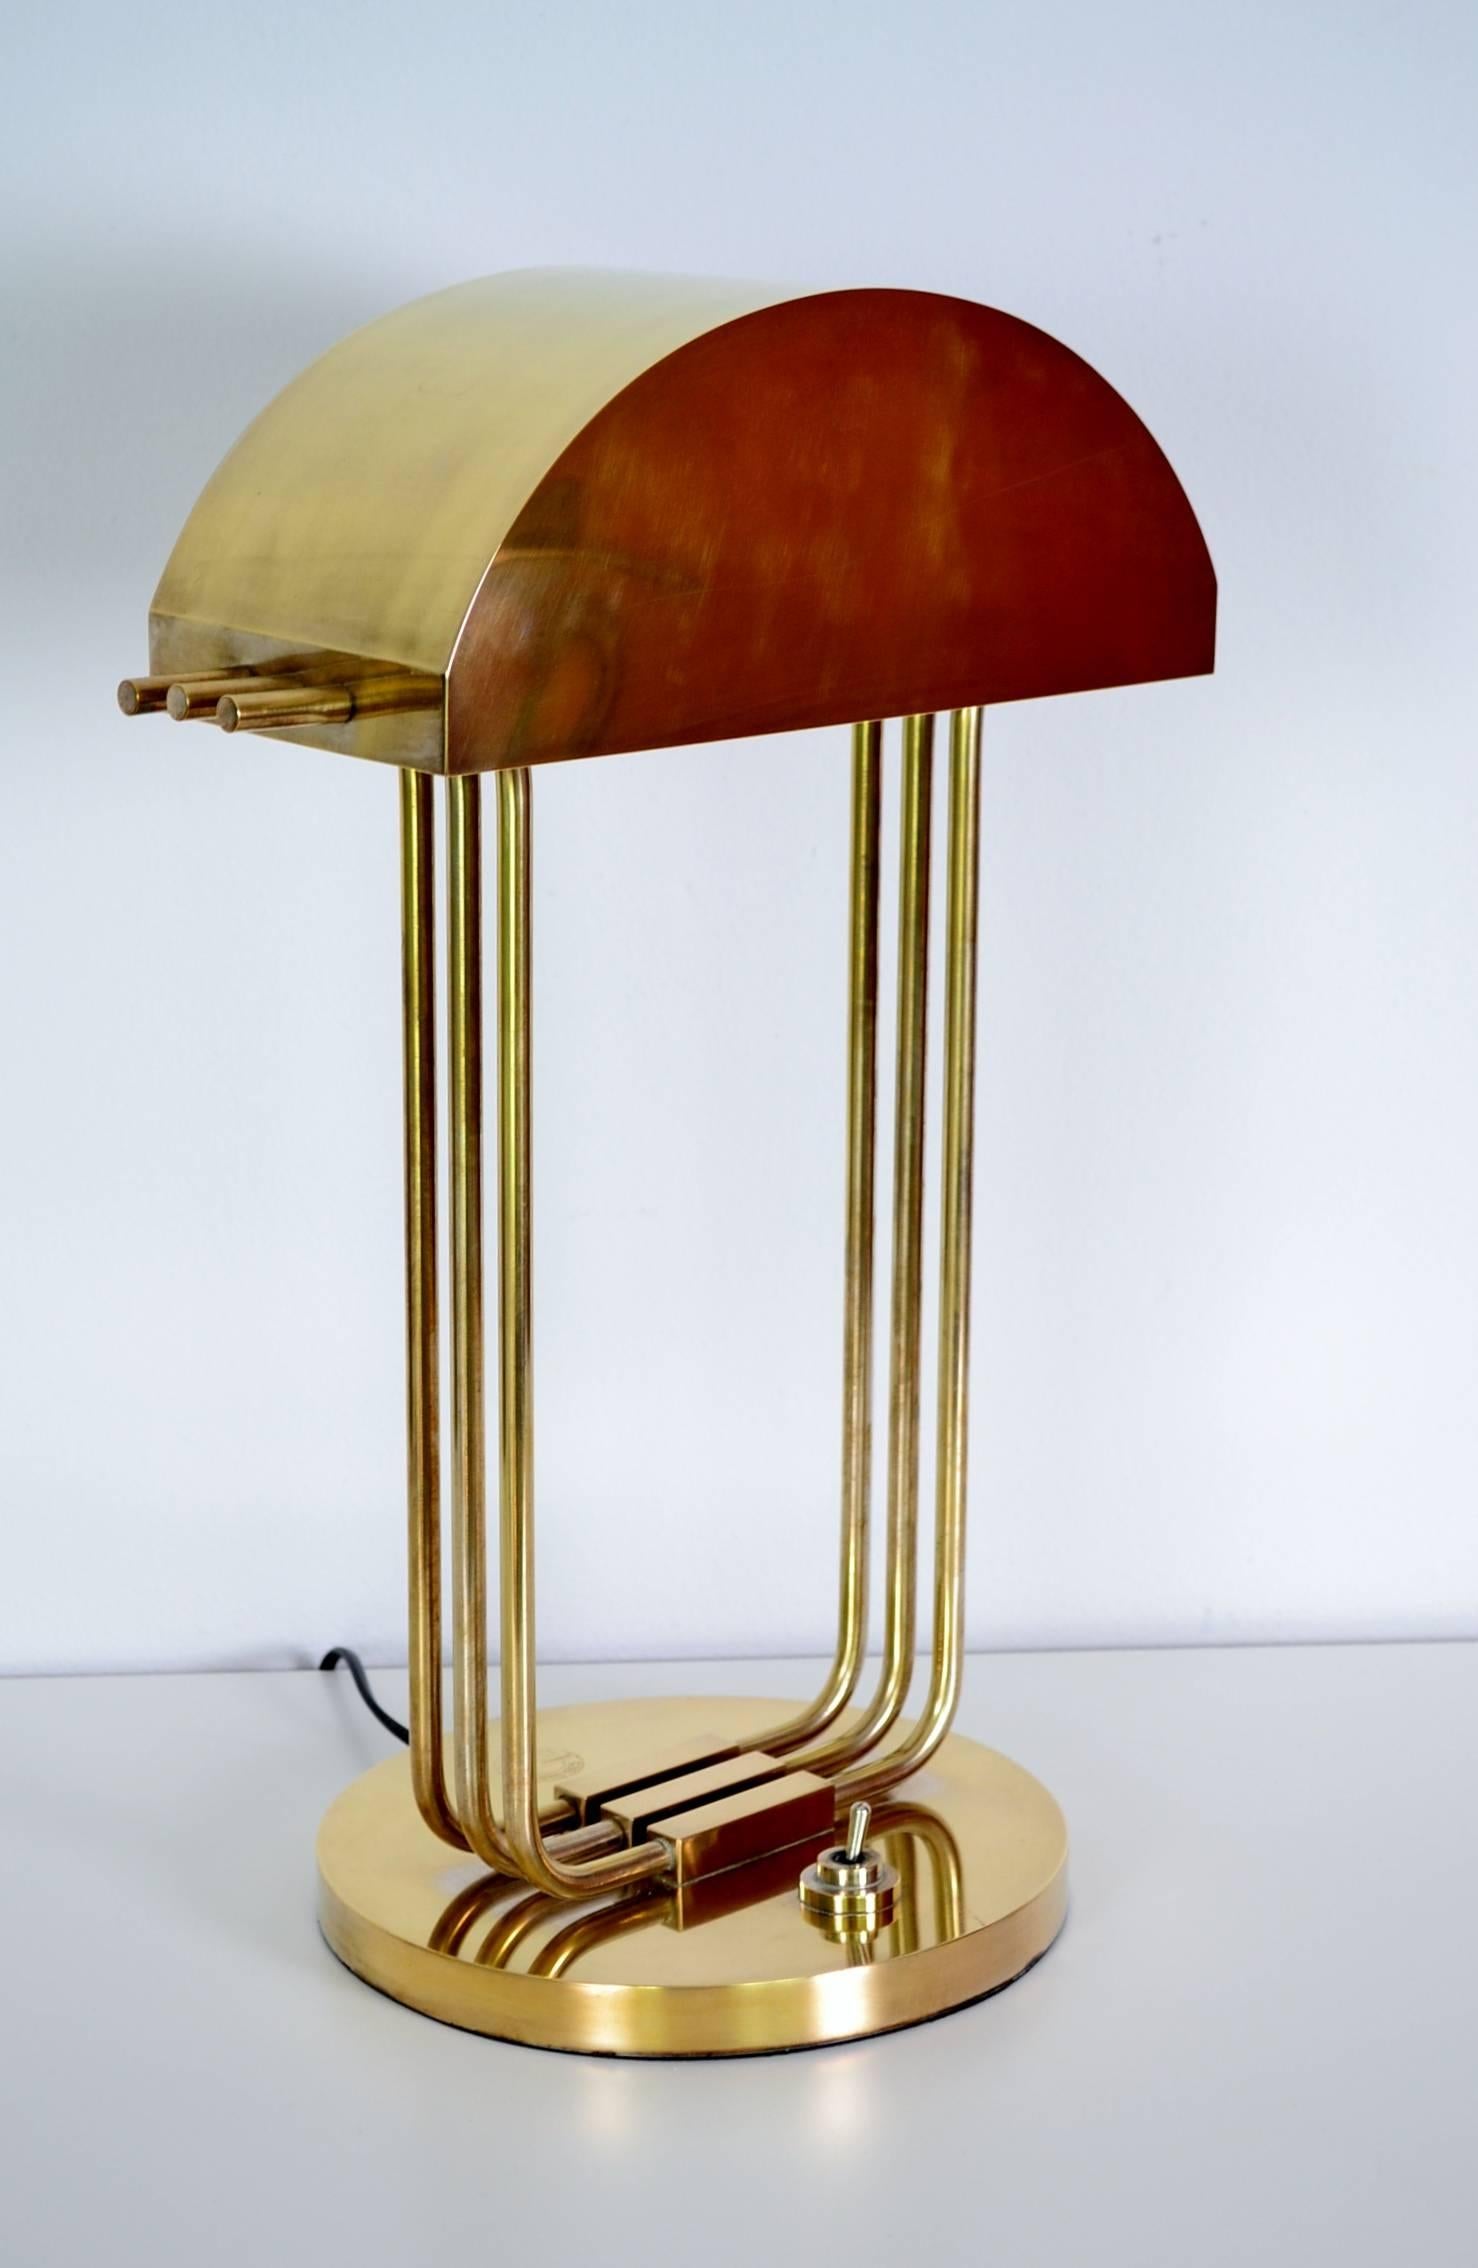 marcel breuer lamp paris 1925